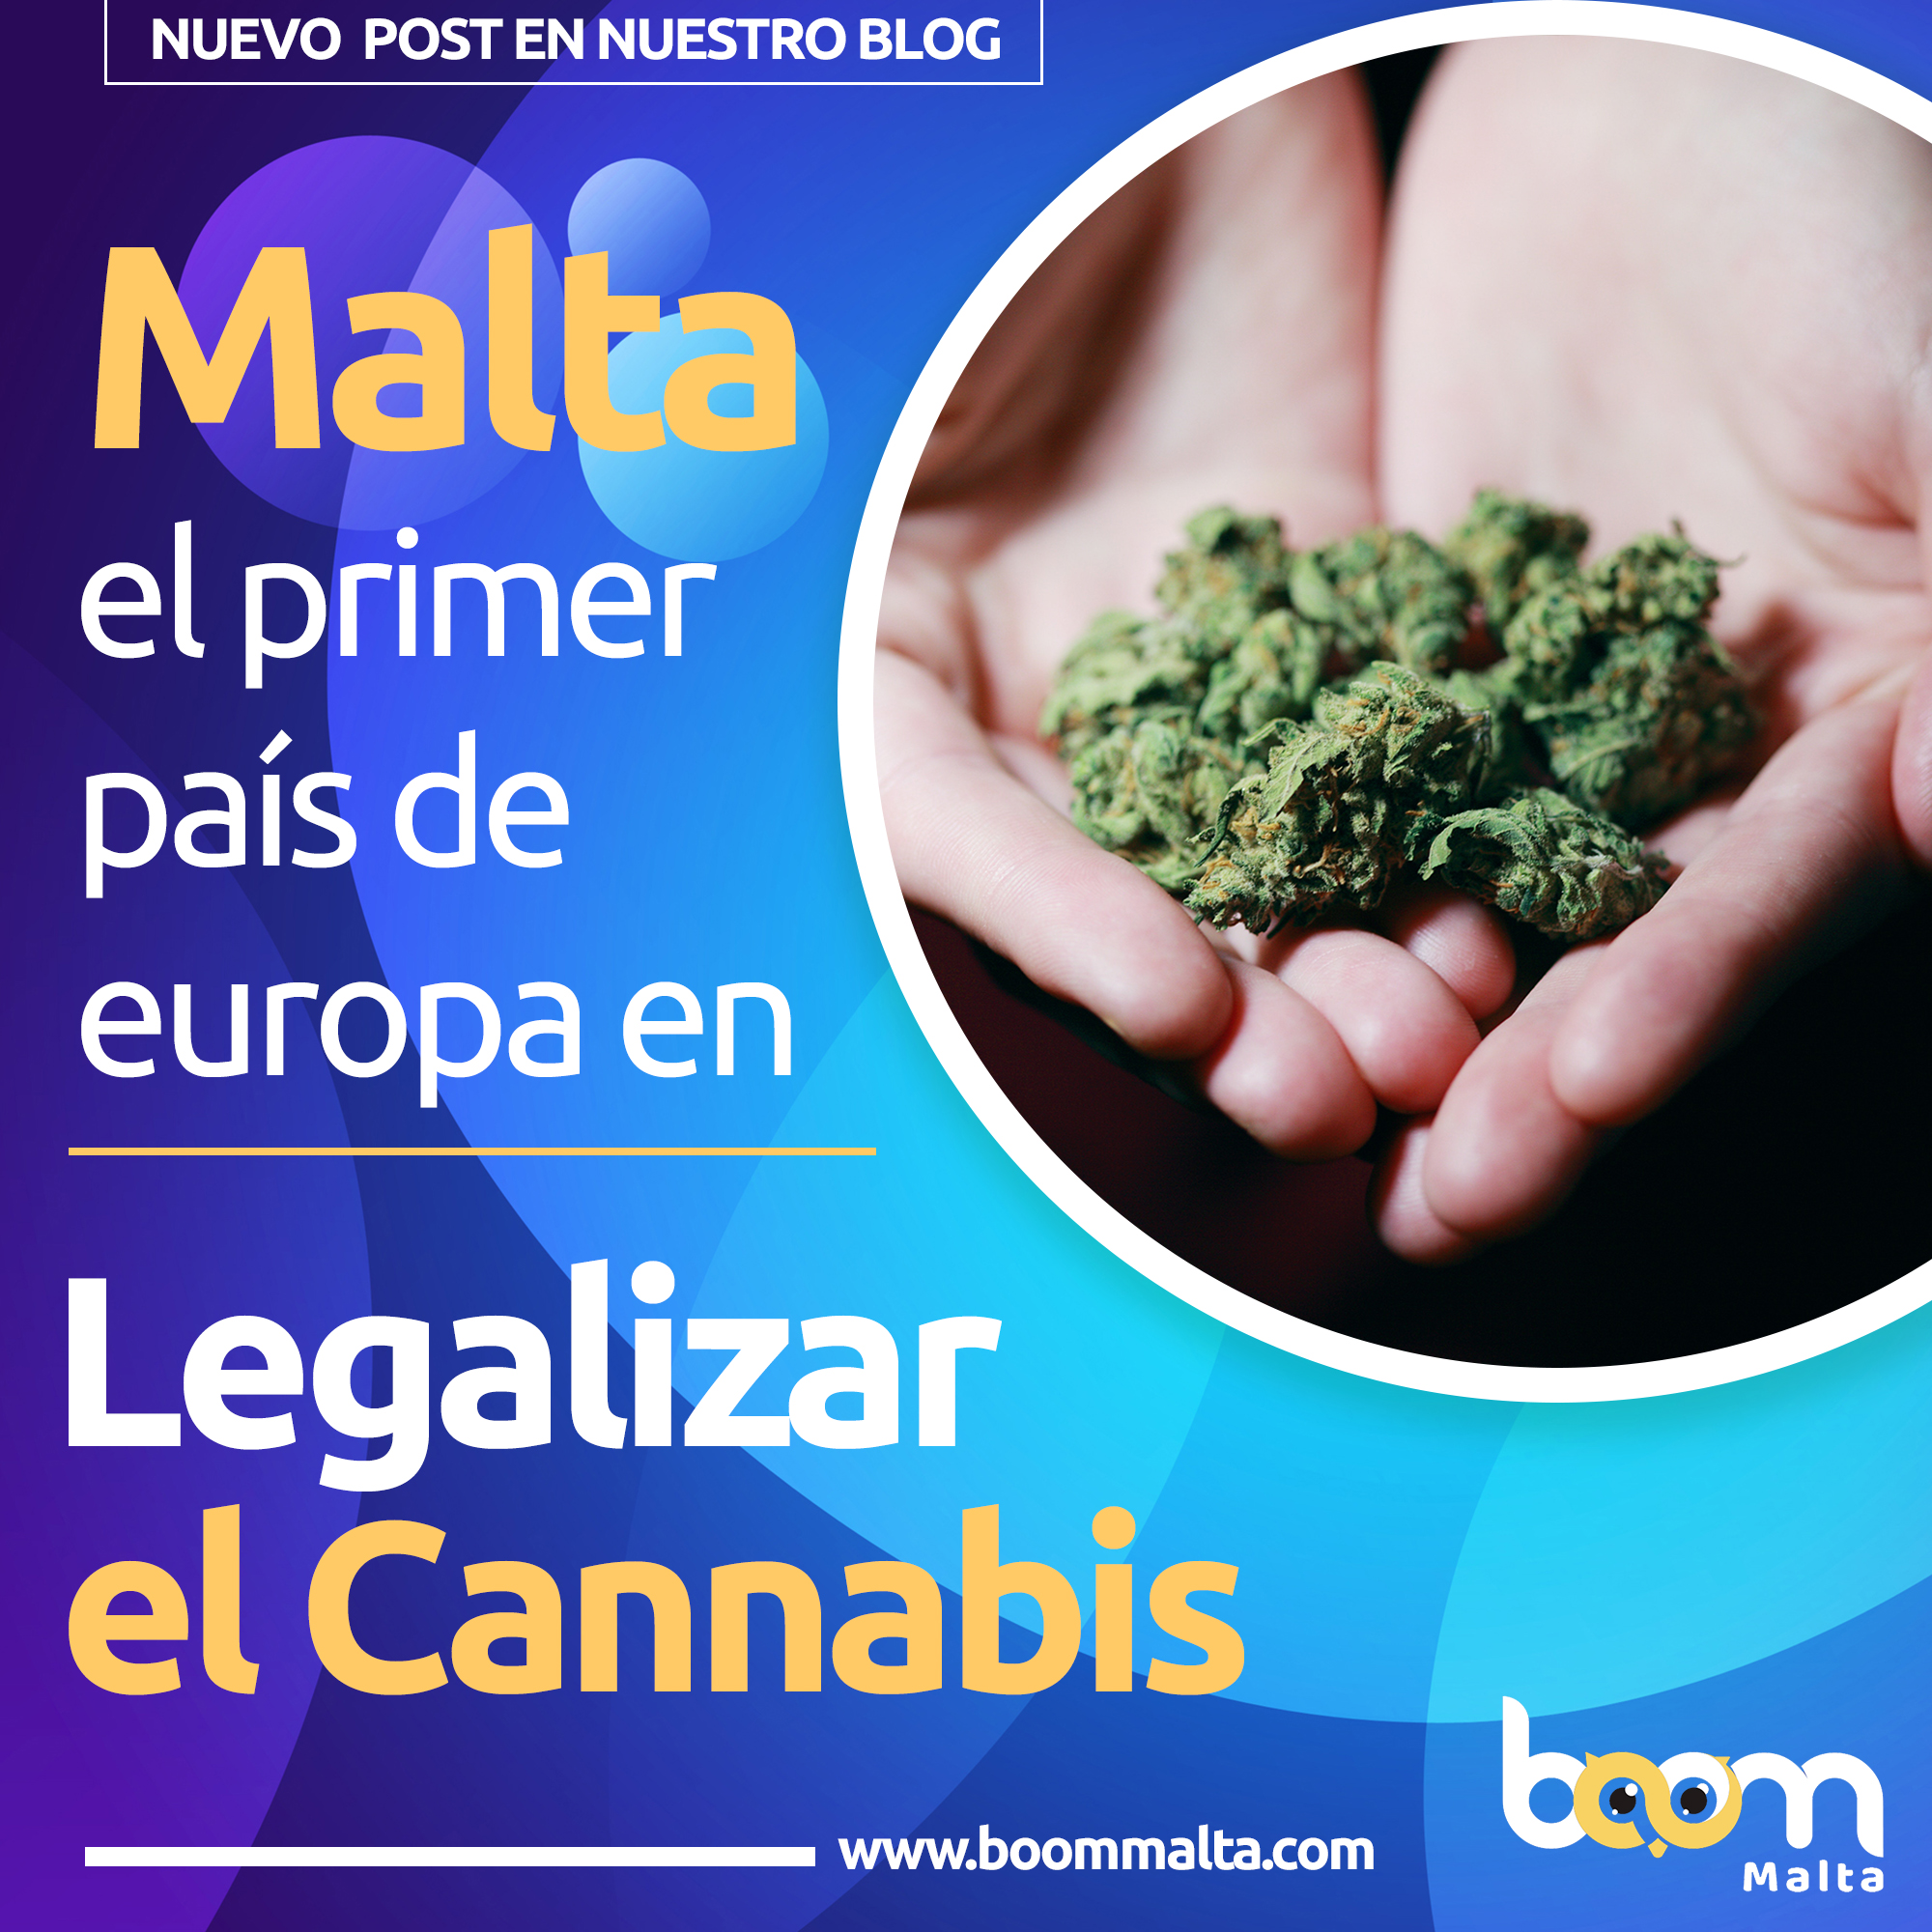 Legalización de la marihuana en Malta